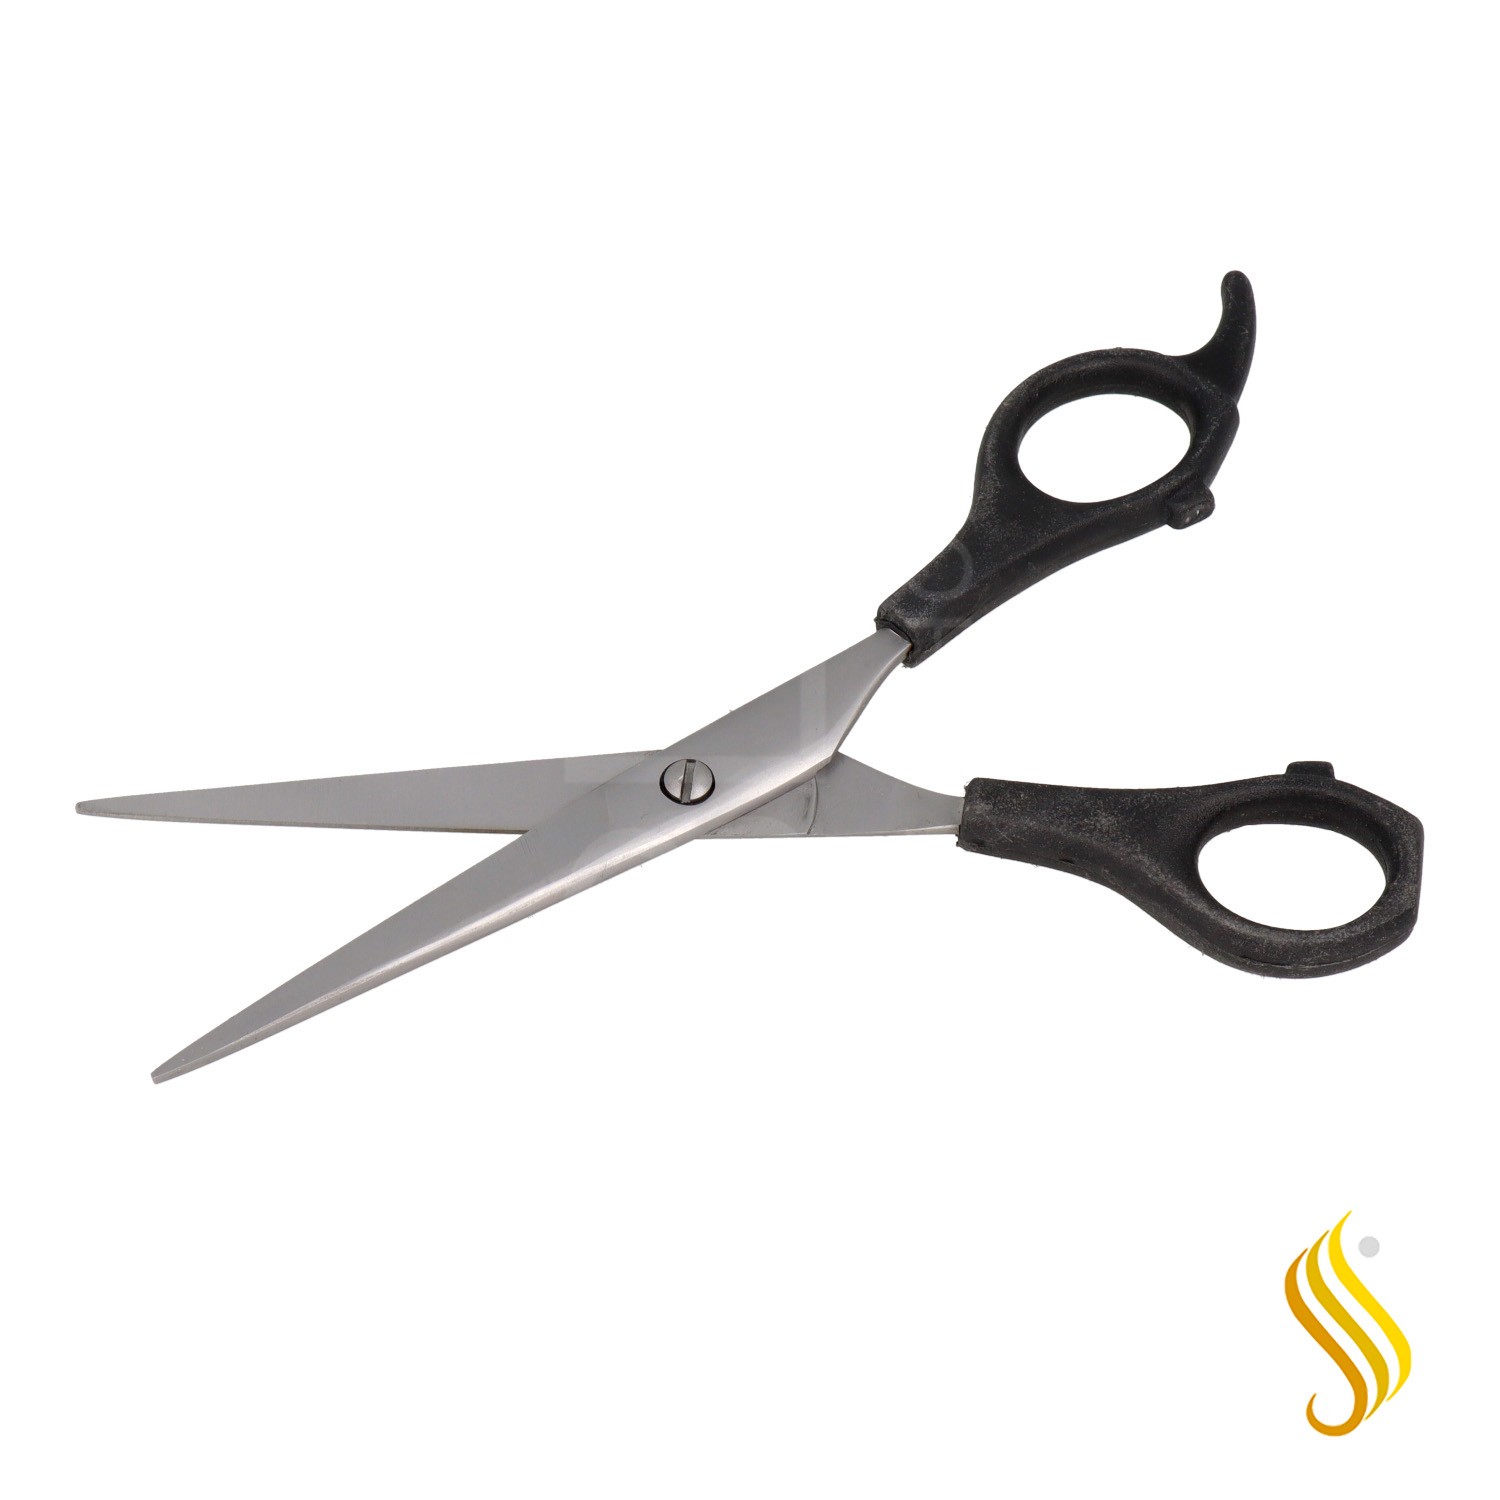 Zenish Scissors Professional Plastico Black Normal 6,5"